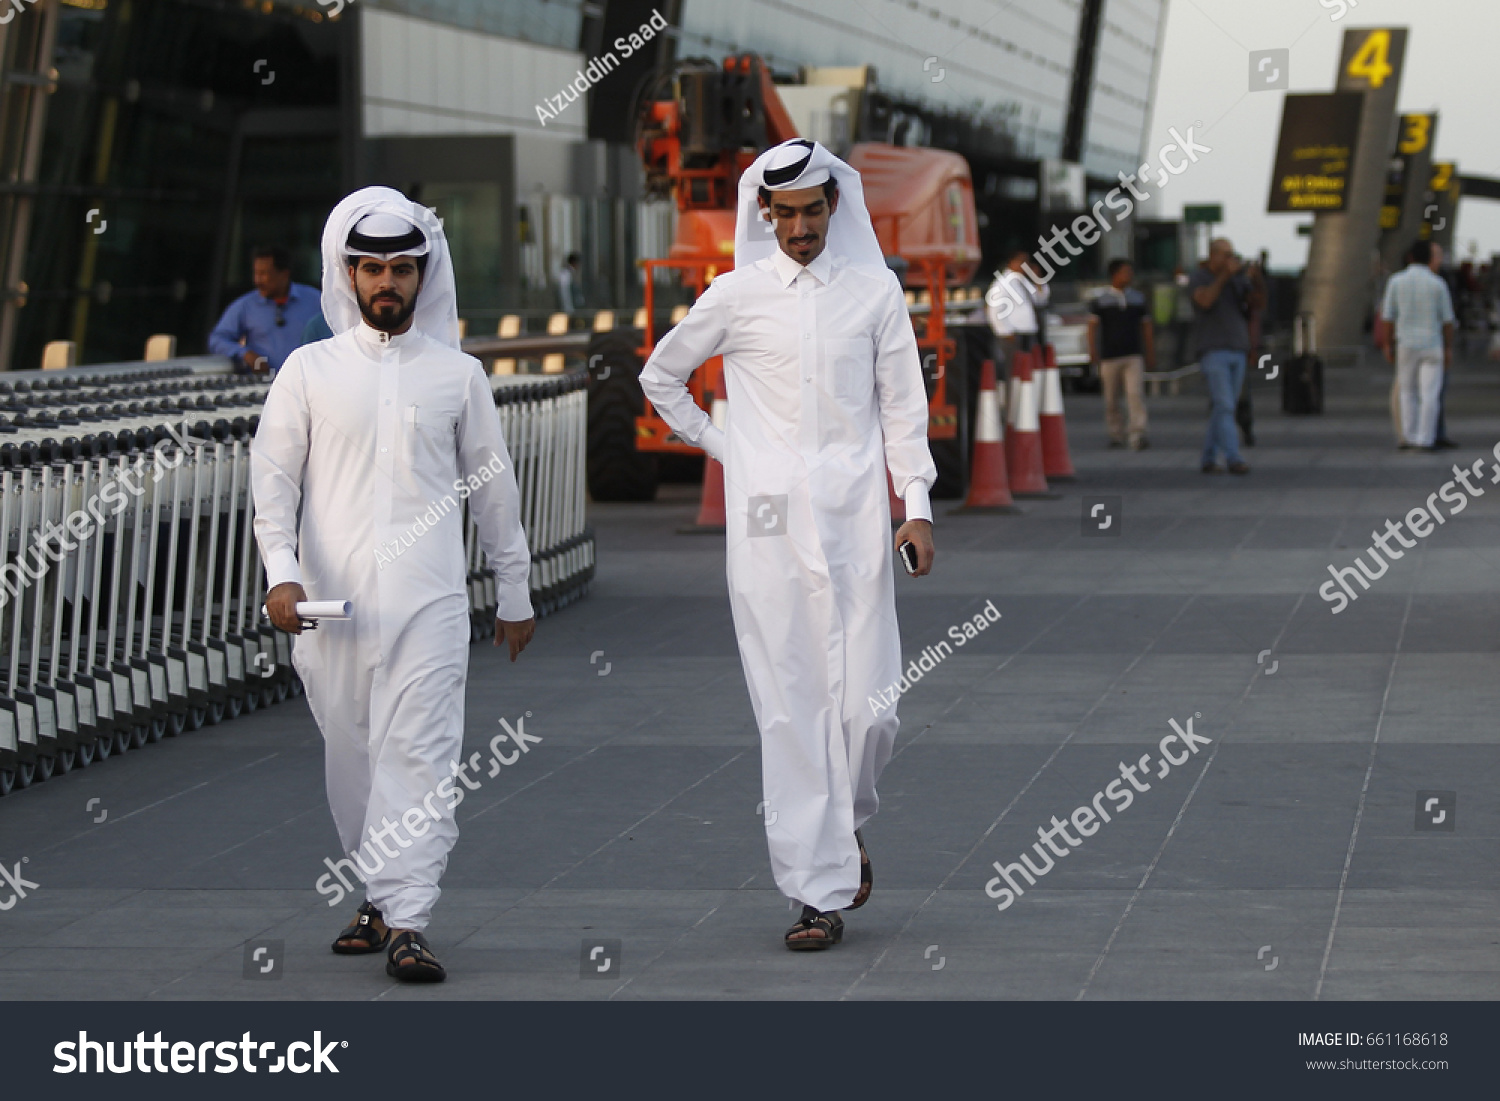 одежда в саудовской аравии